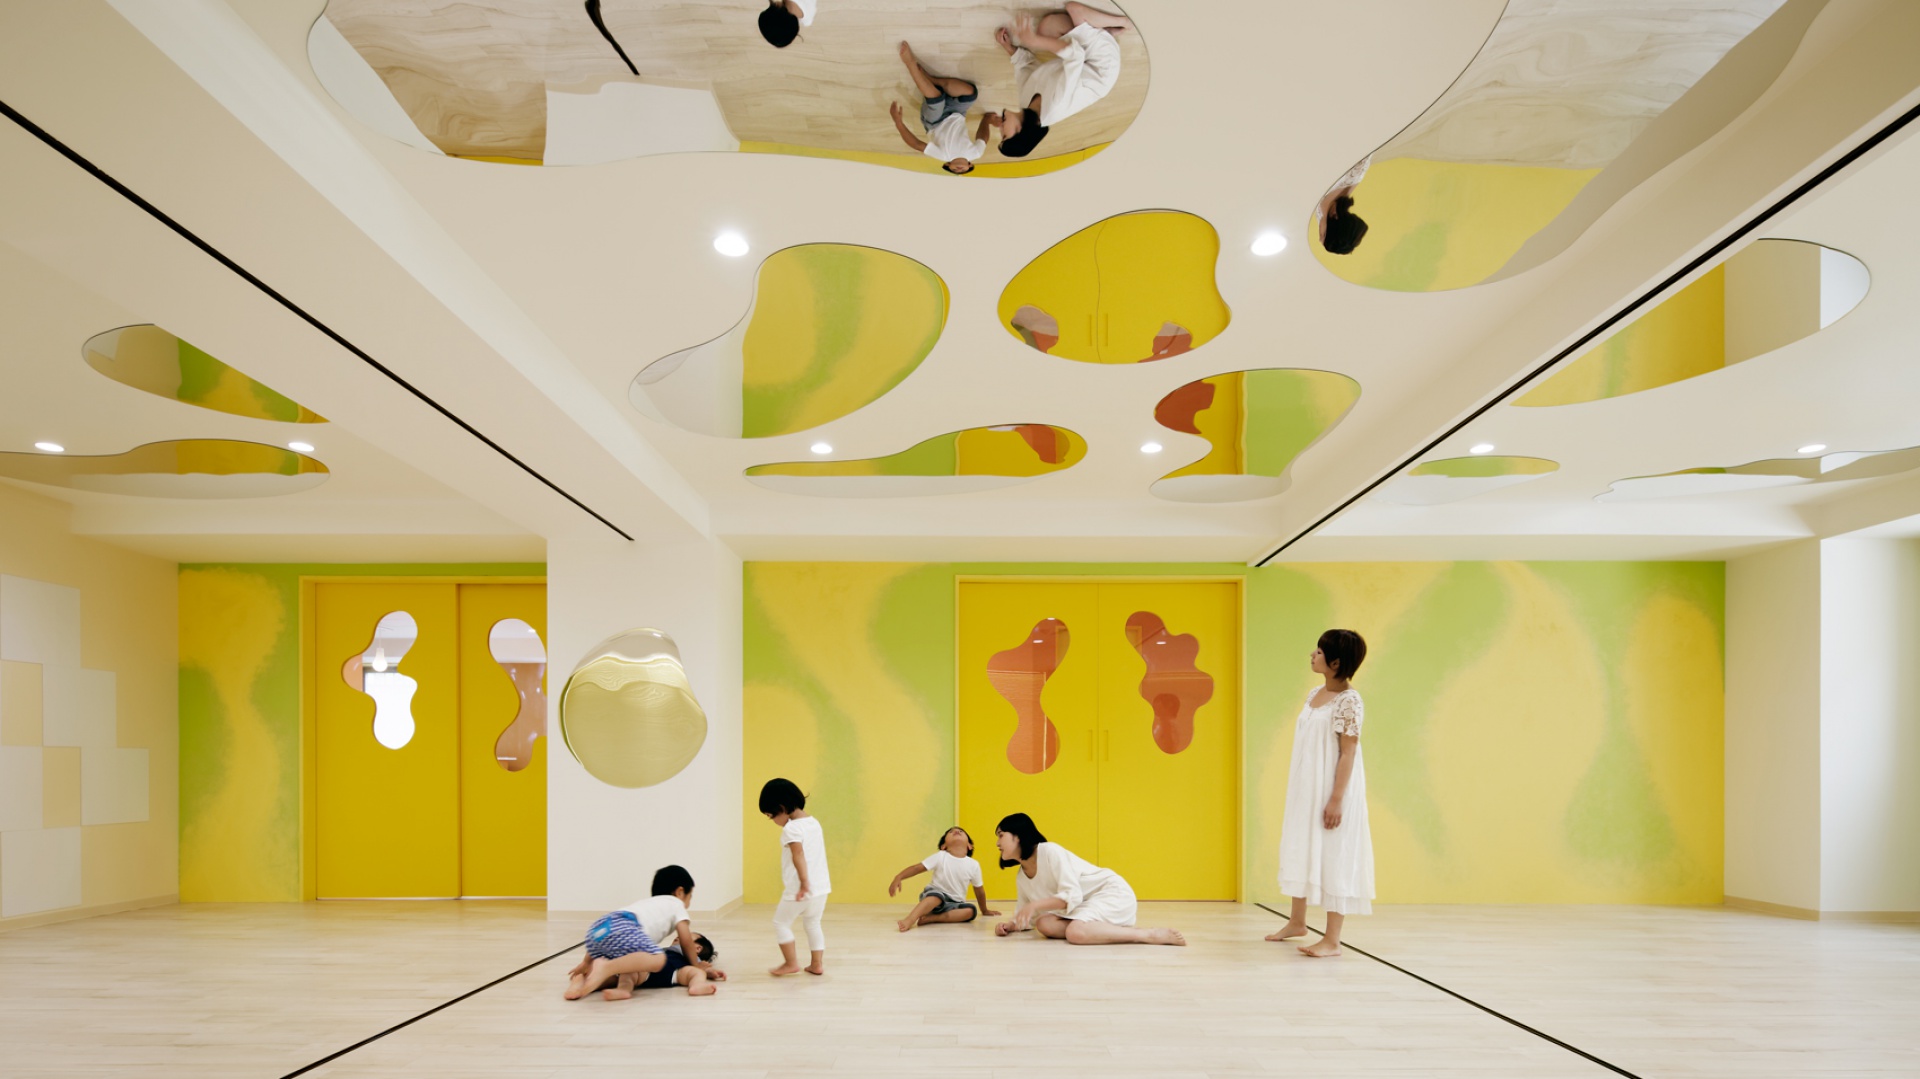 Tokijskie przedszkole LHM zostało oddane do użytku w marcu 2015 roku. Fot. Atsushi Ishida